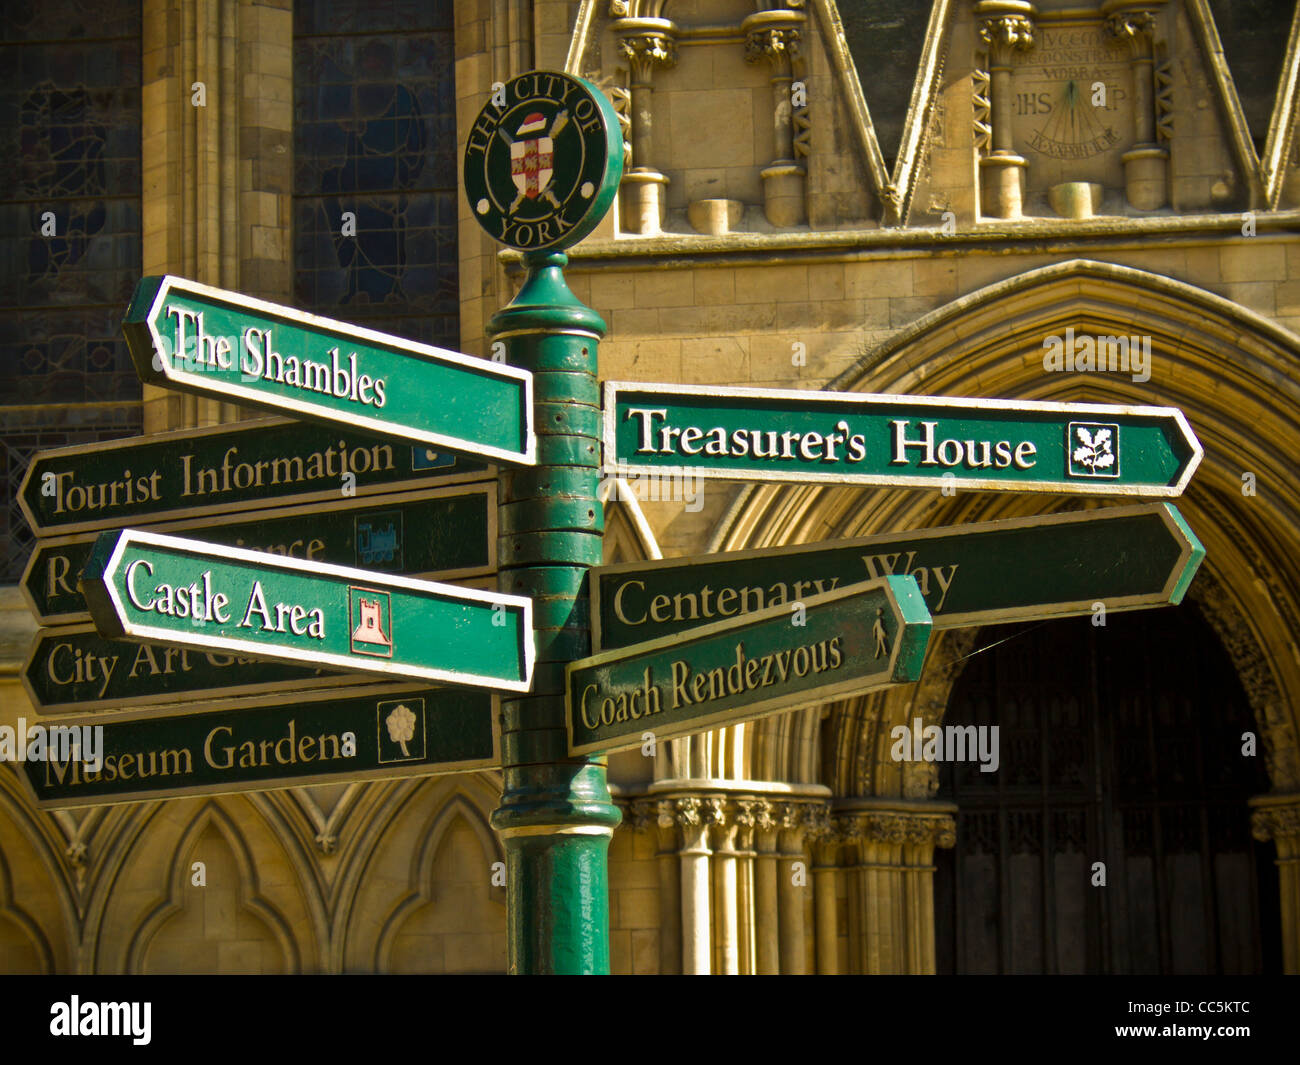 Cartel con señales a las atracciones turísticas de York frente a la catedral de York. Foto de stock